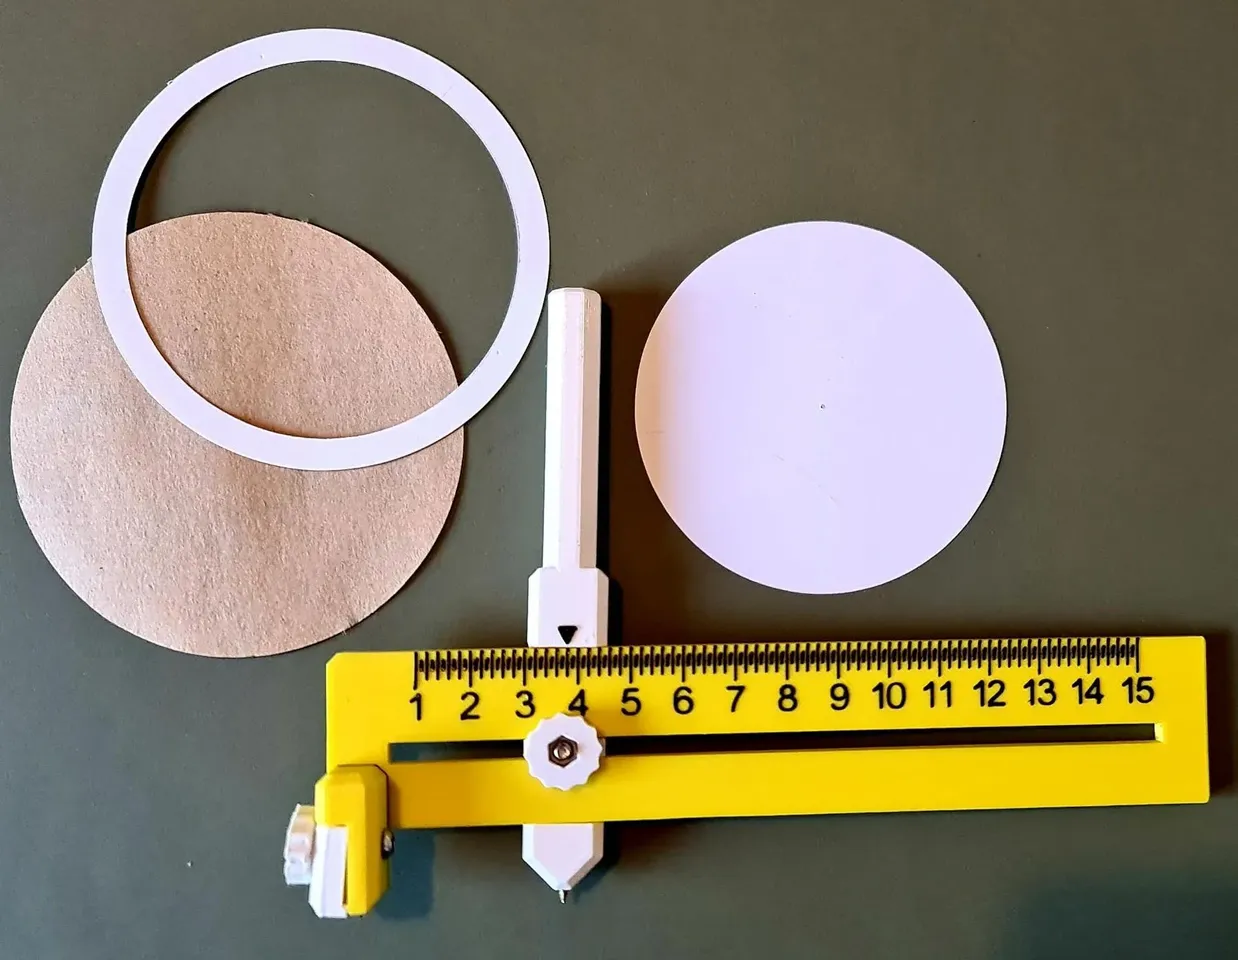 Circle cutter for paper - Kreisschneider für Papier by Alego